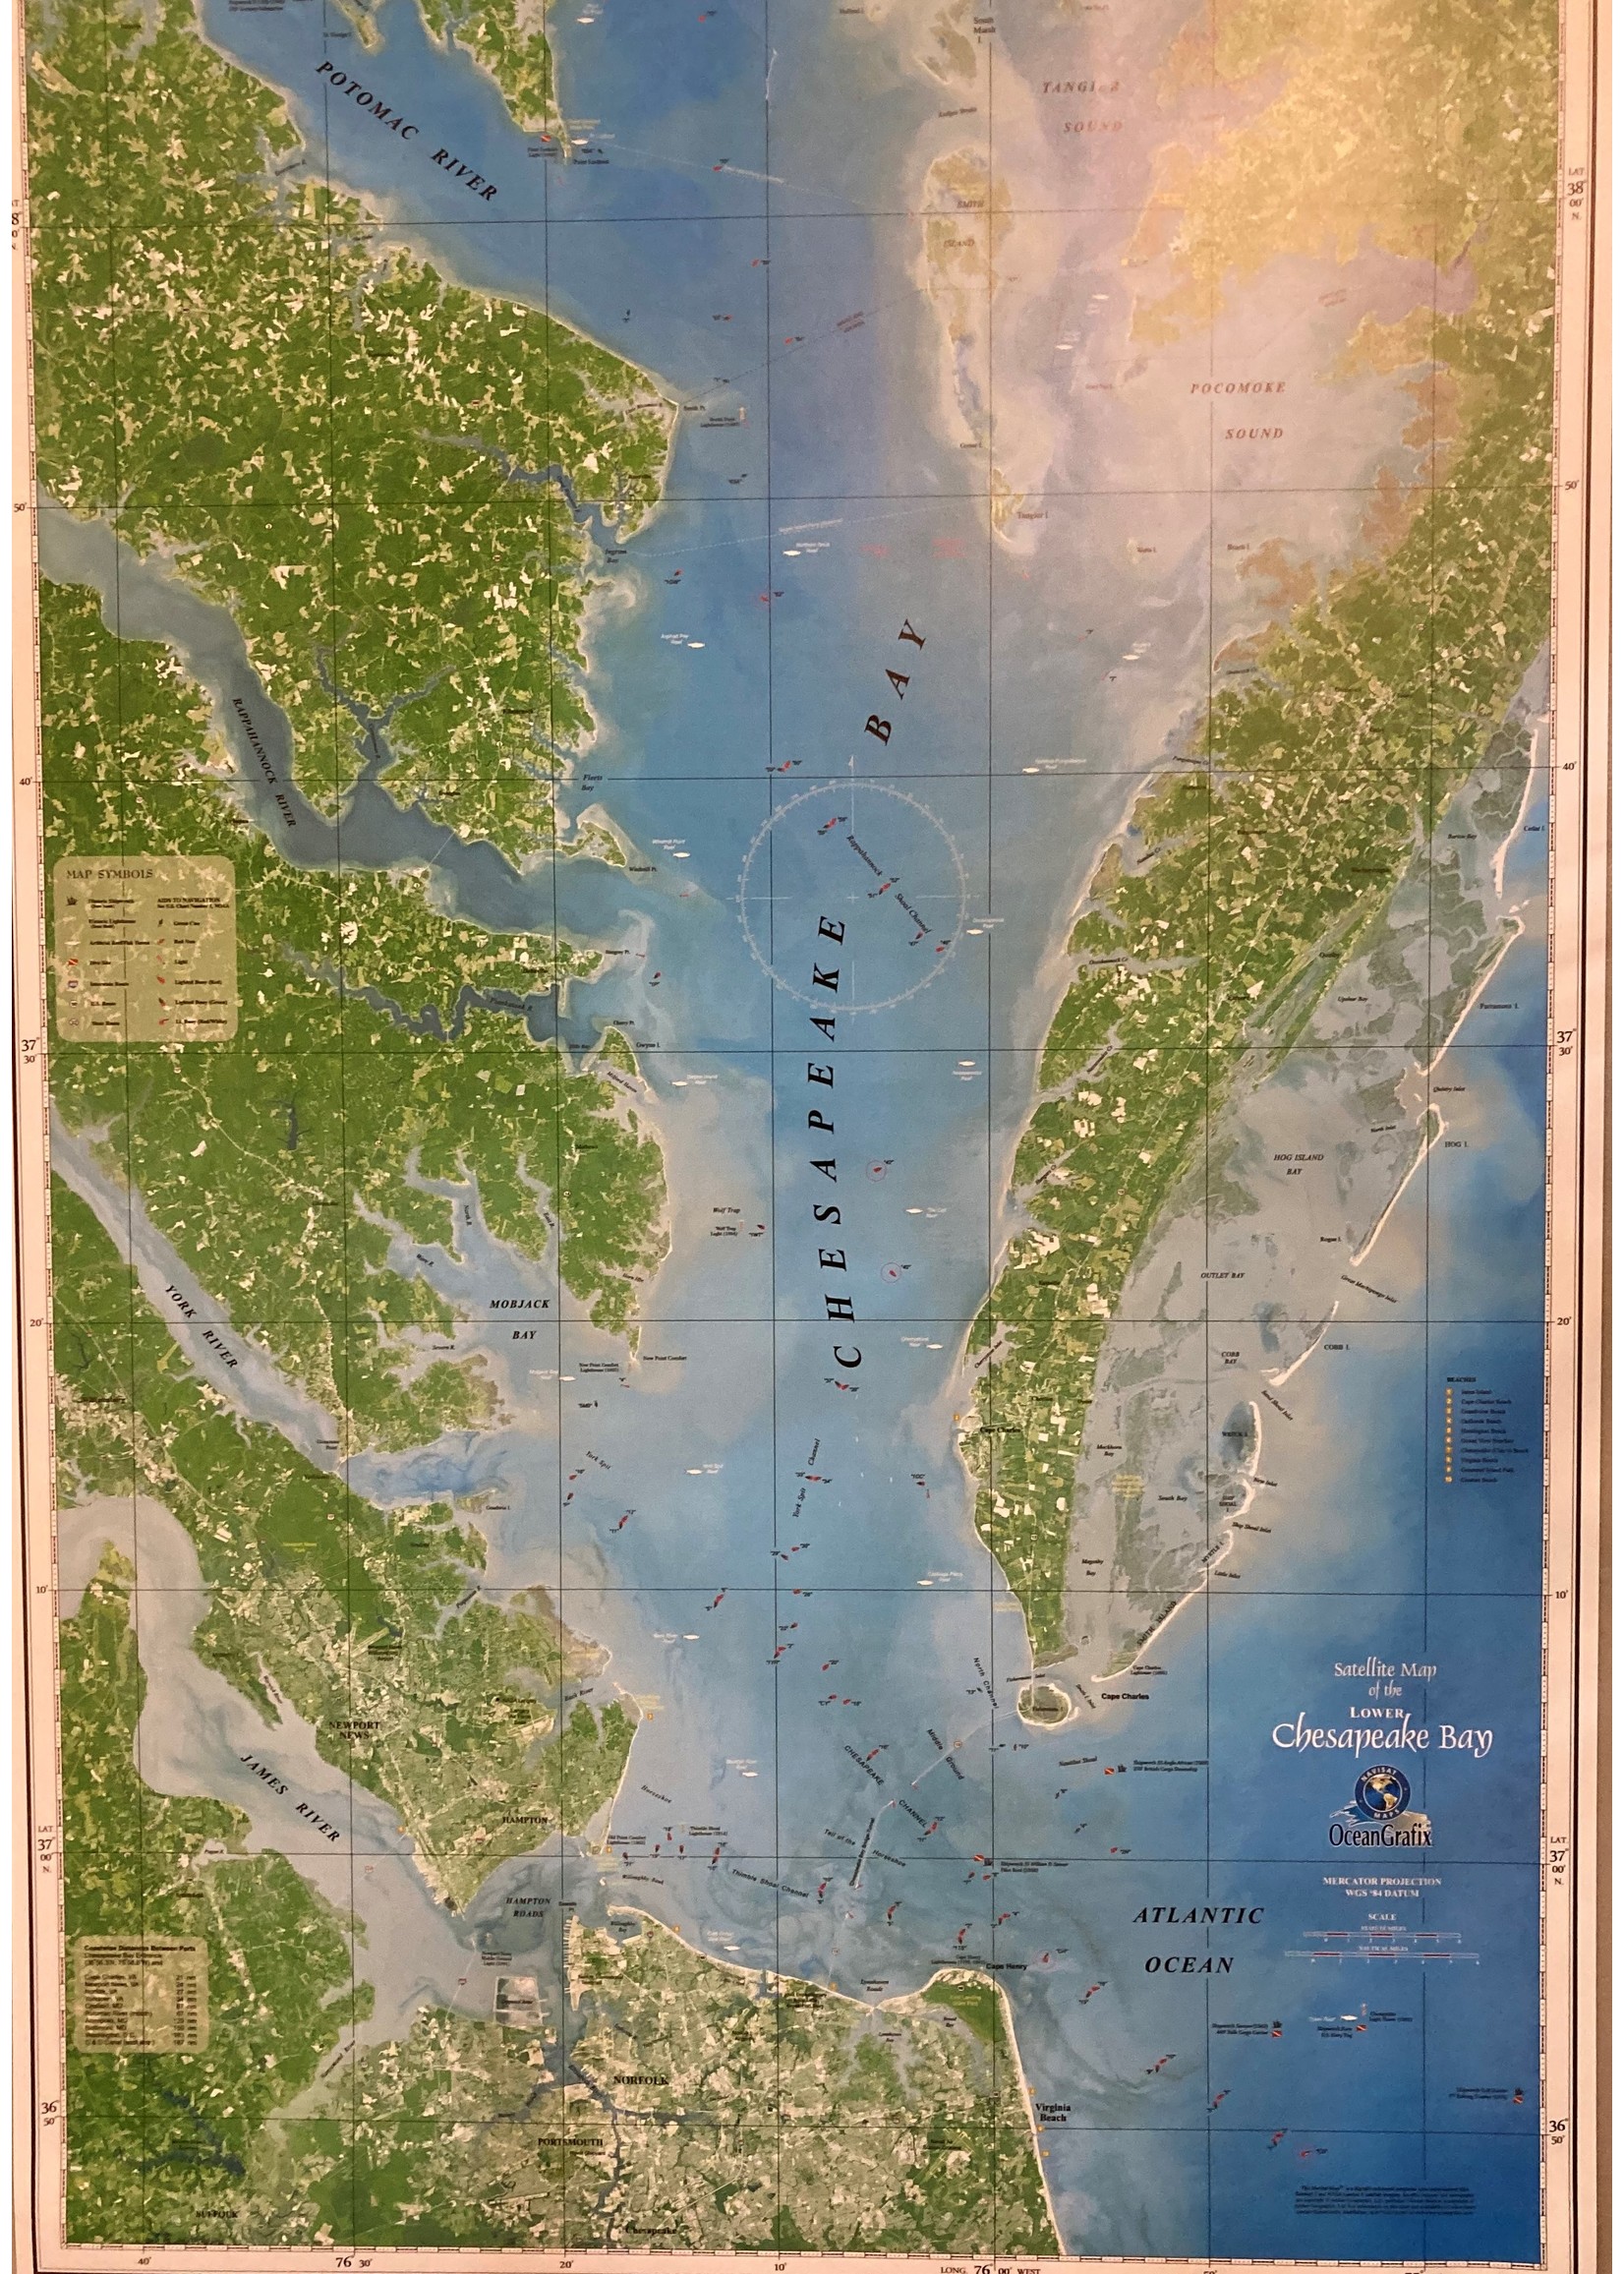 Map, Lower Chesapeake Bay - Satellite View